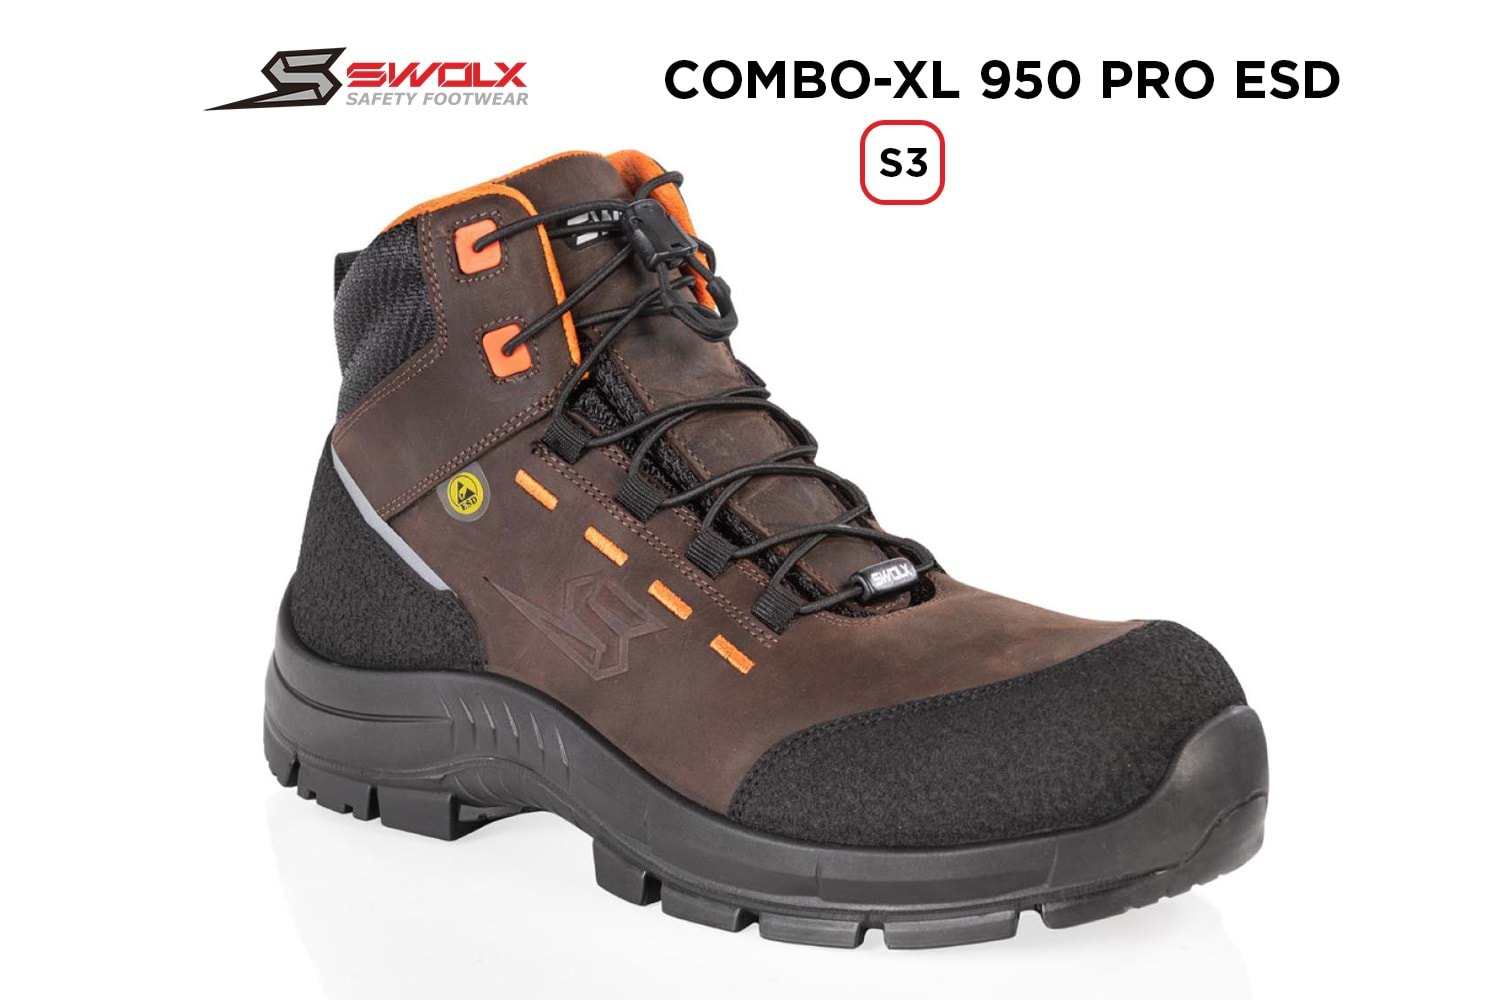 Swolx İş Ayakkabısı - Combo-Xl Pro Esd 950 S3 - 44